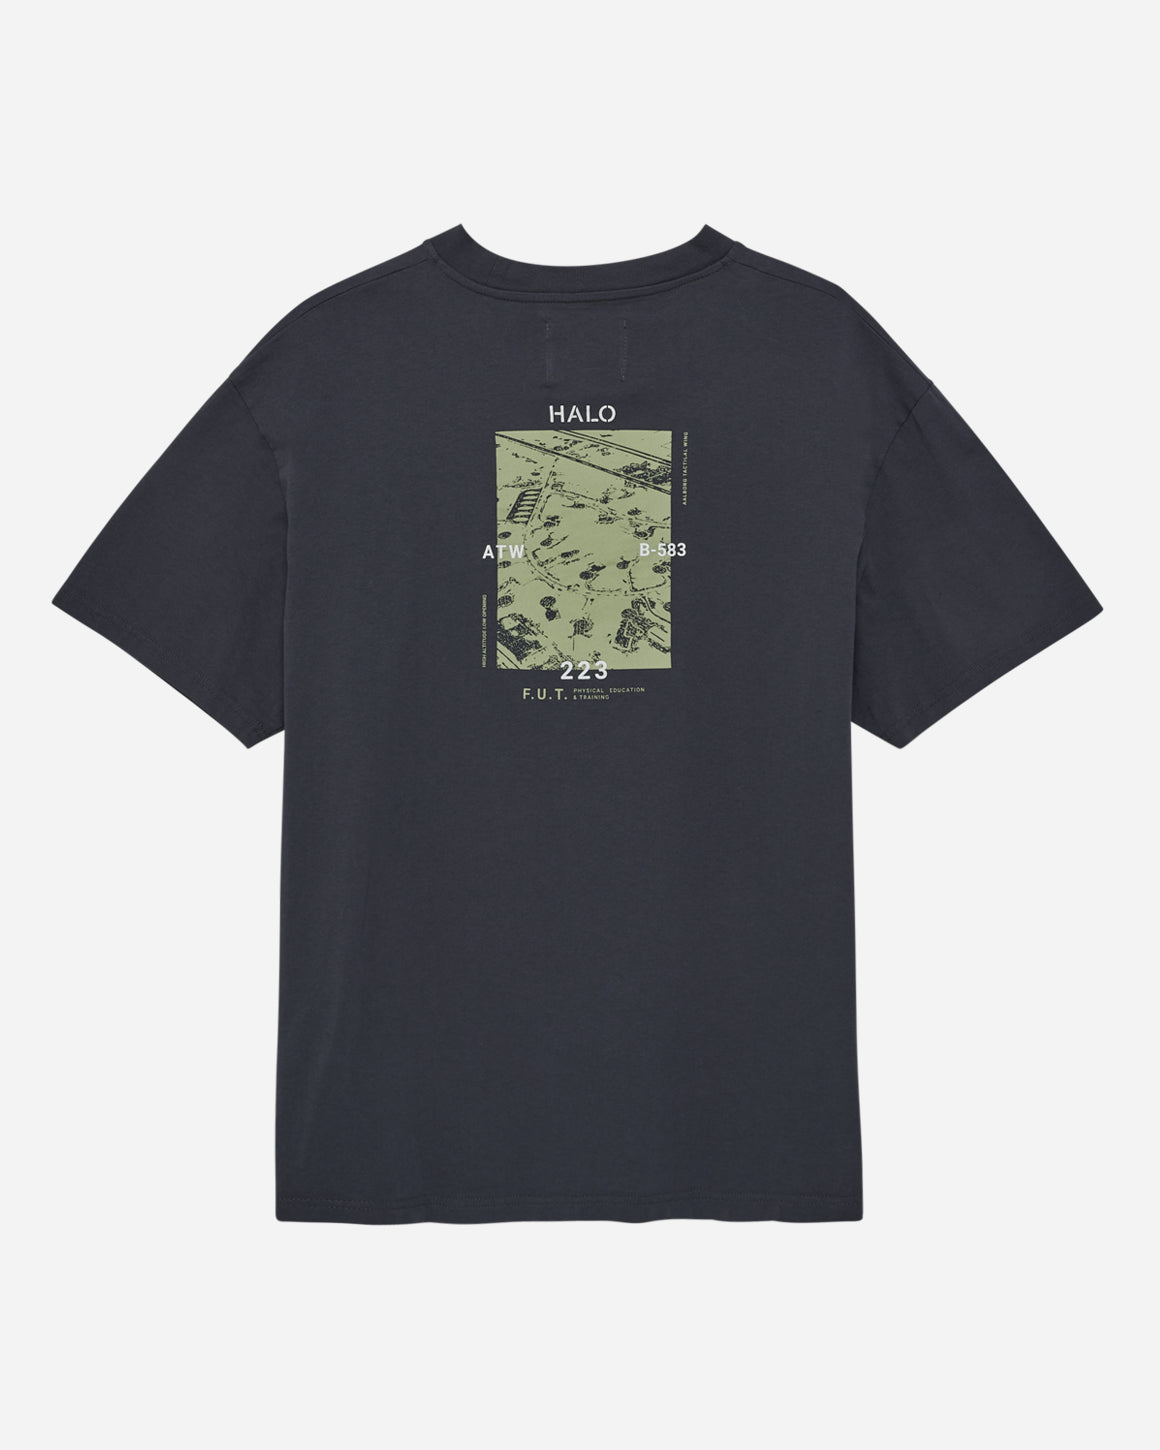 Heavy Graphic T-Shirt - Mørk Grå - HALO - Kul og Koks